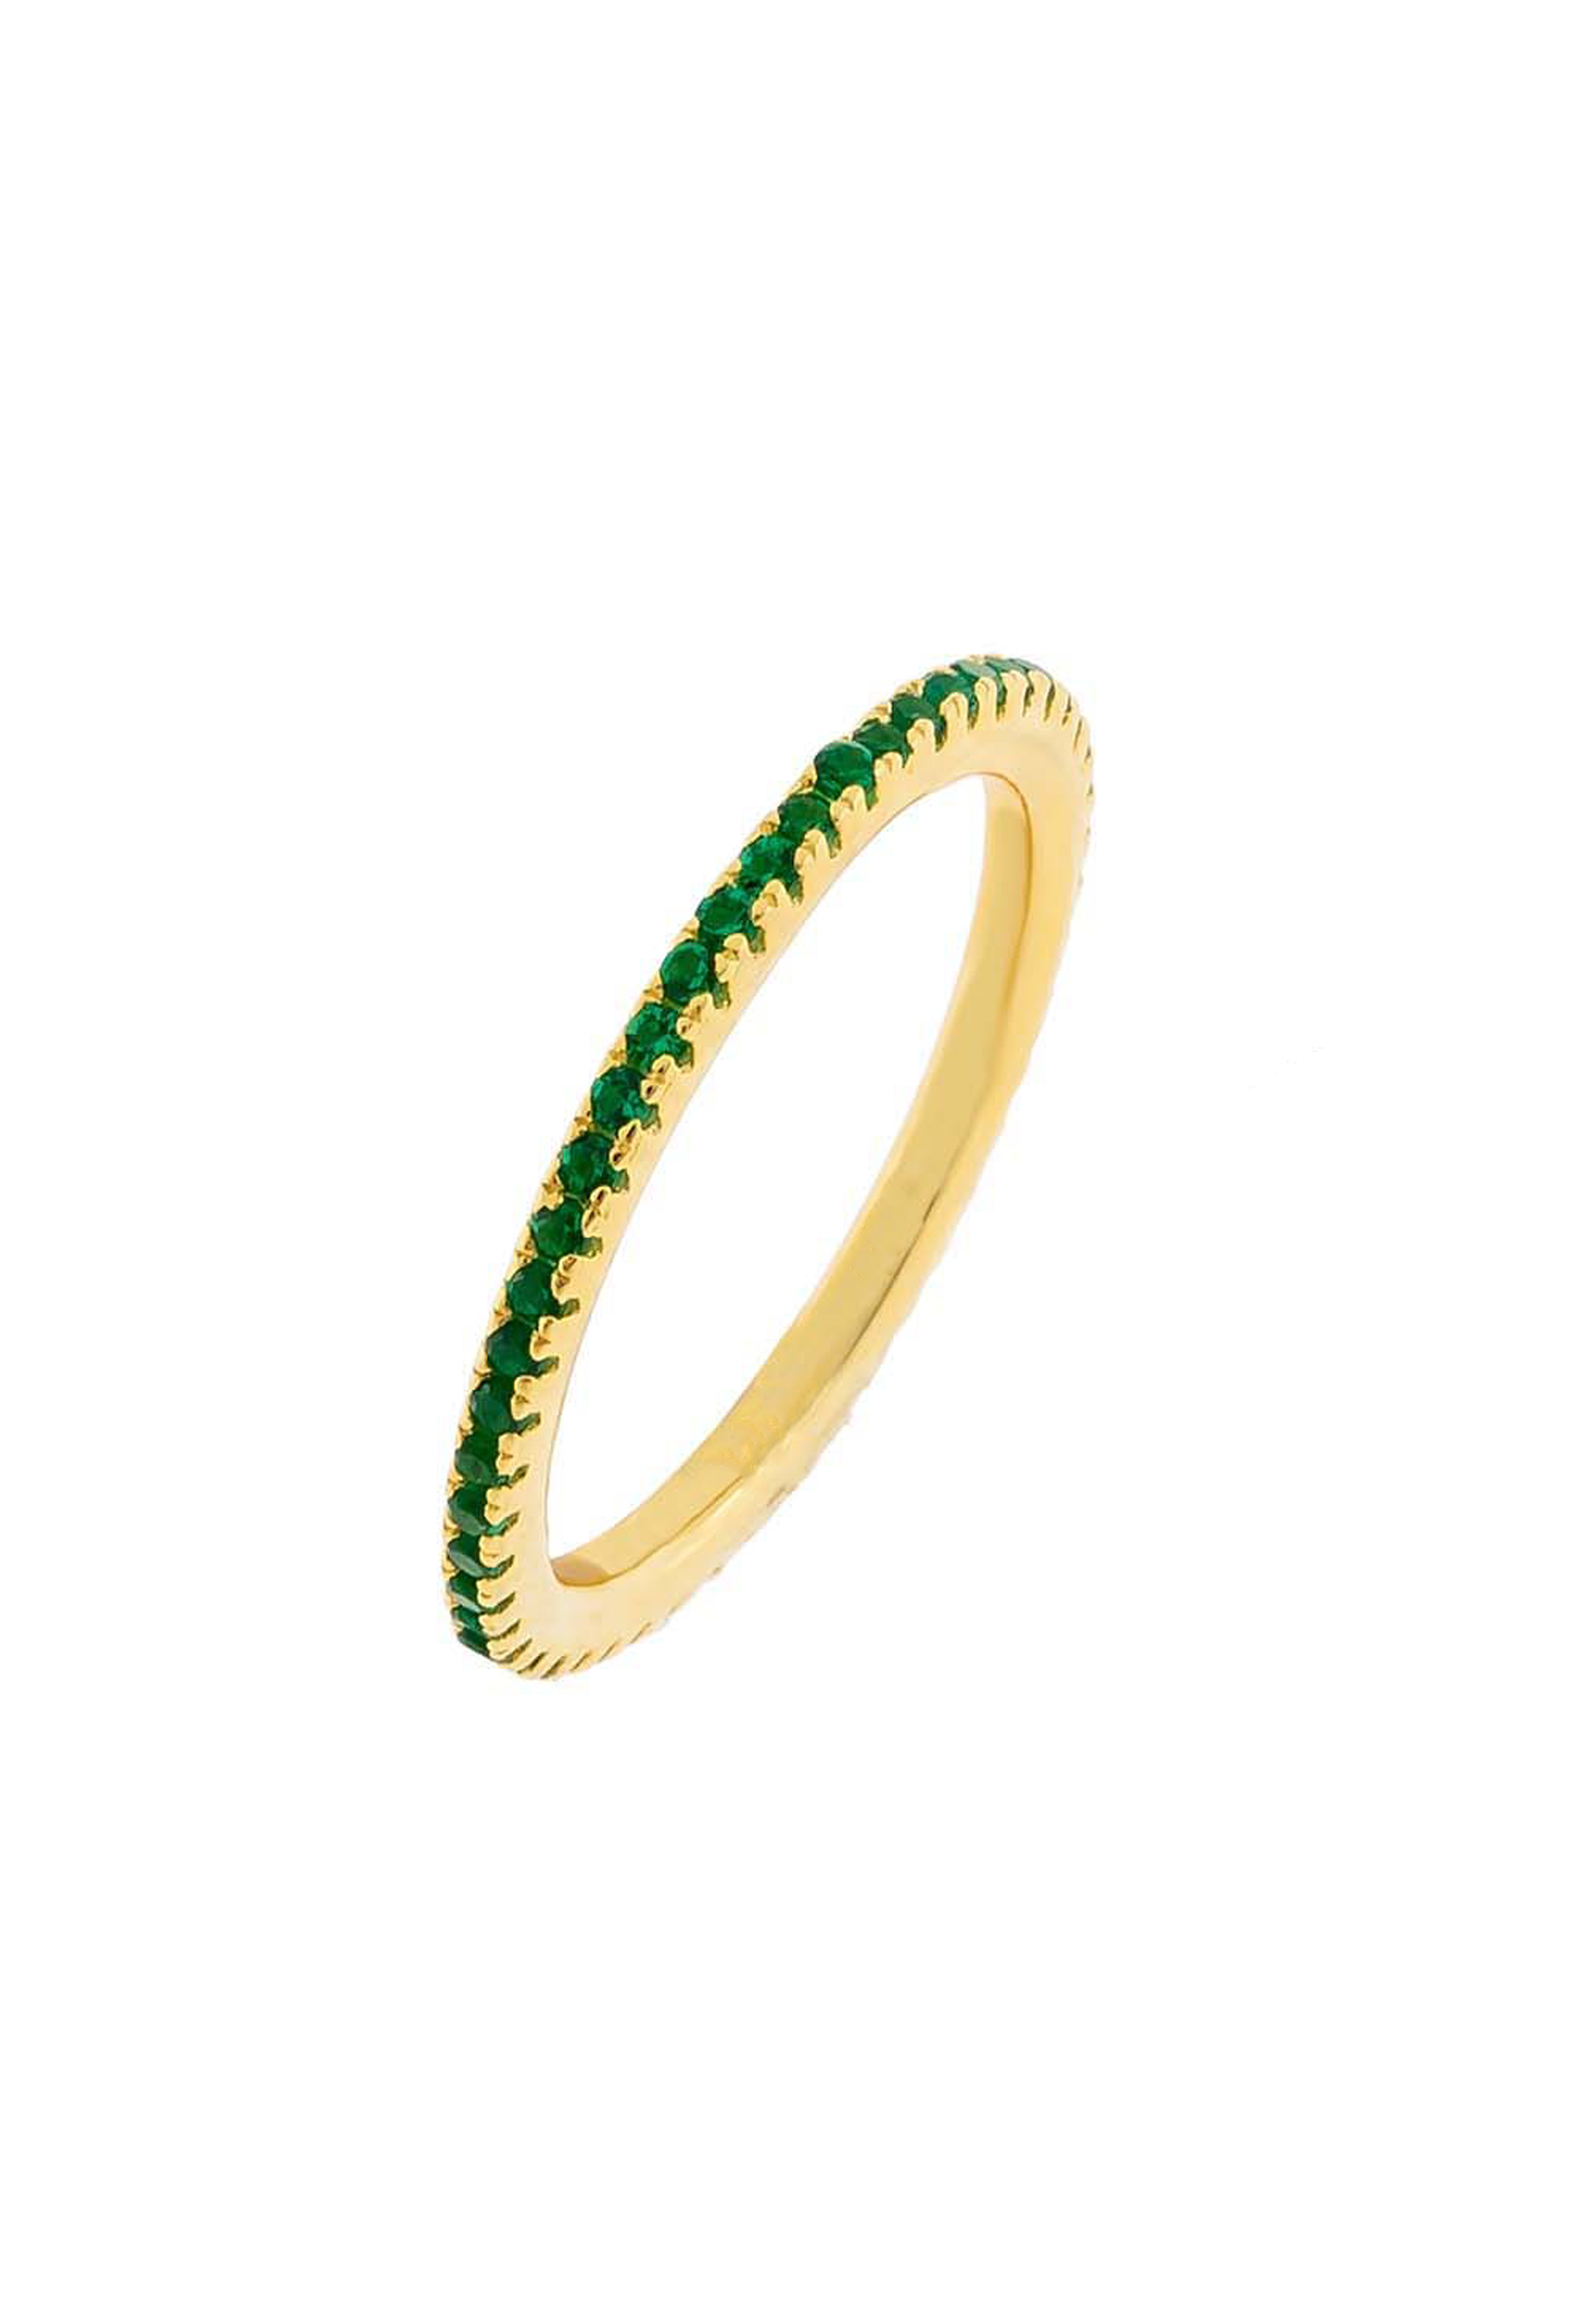 Hart Ring (Emerald) - Gold Vermeil